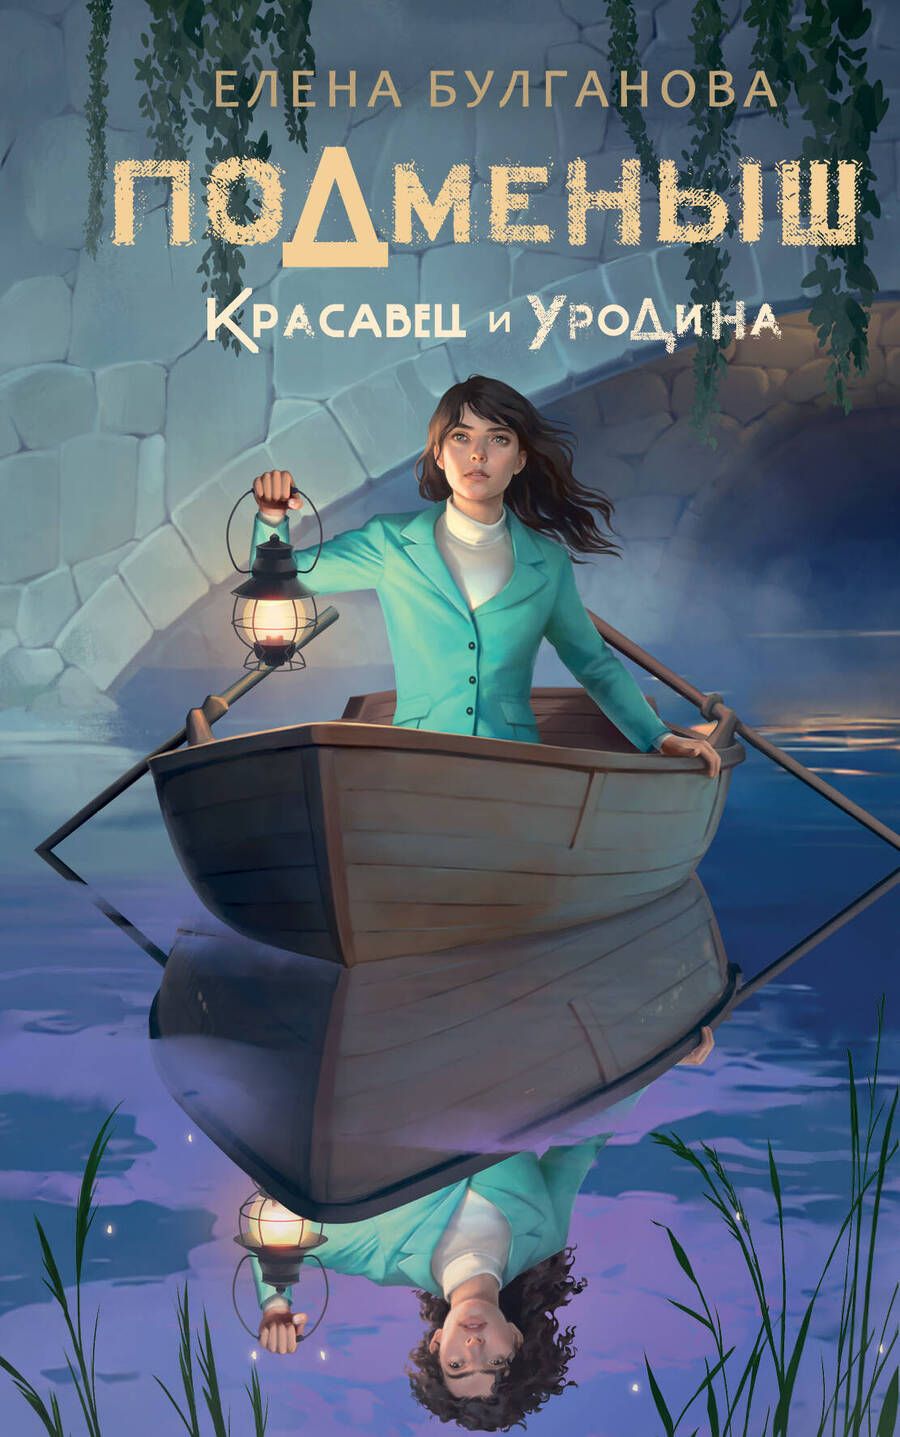 Обложка книги "Булганова: Подменыш. Красавец и уродина"